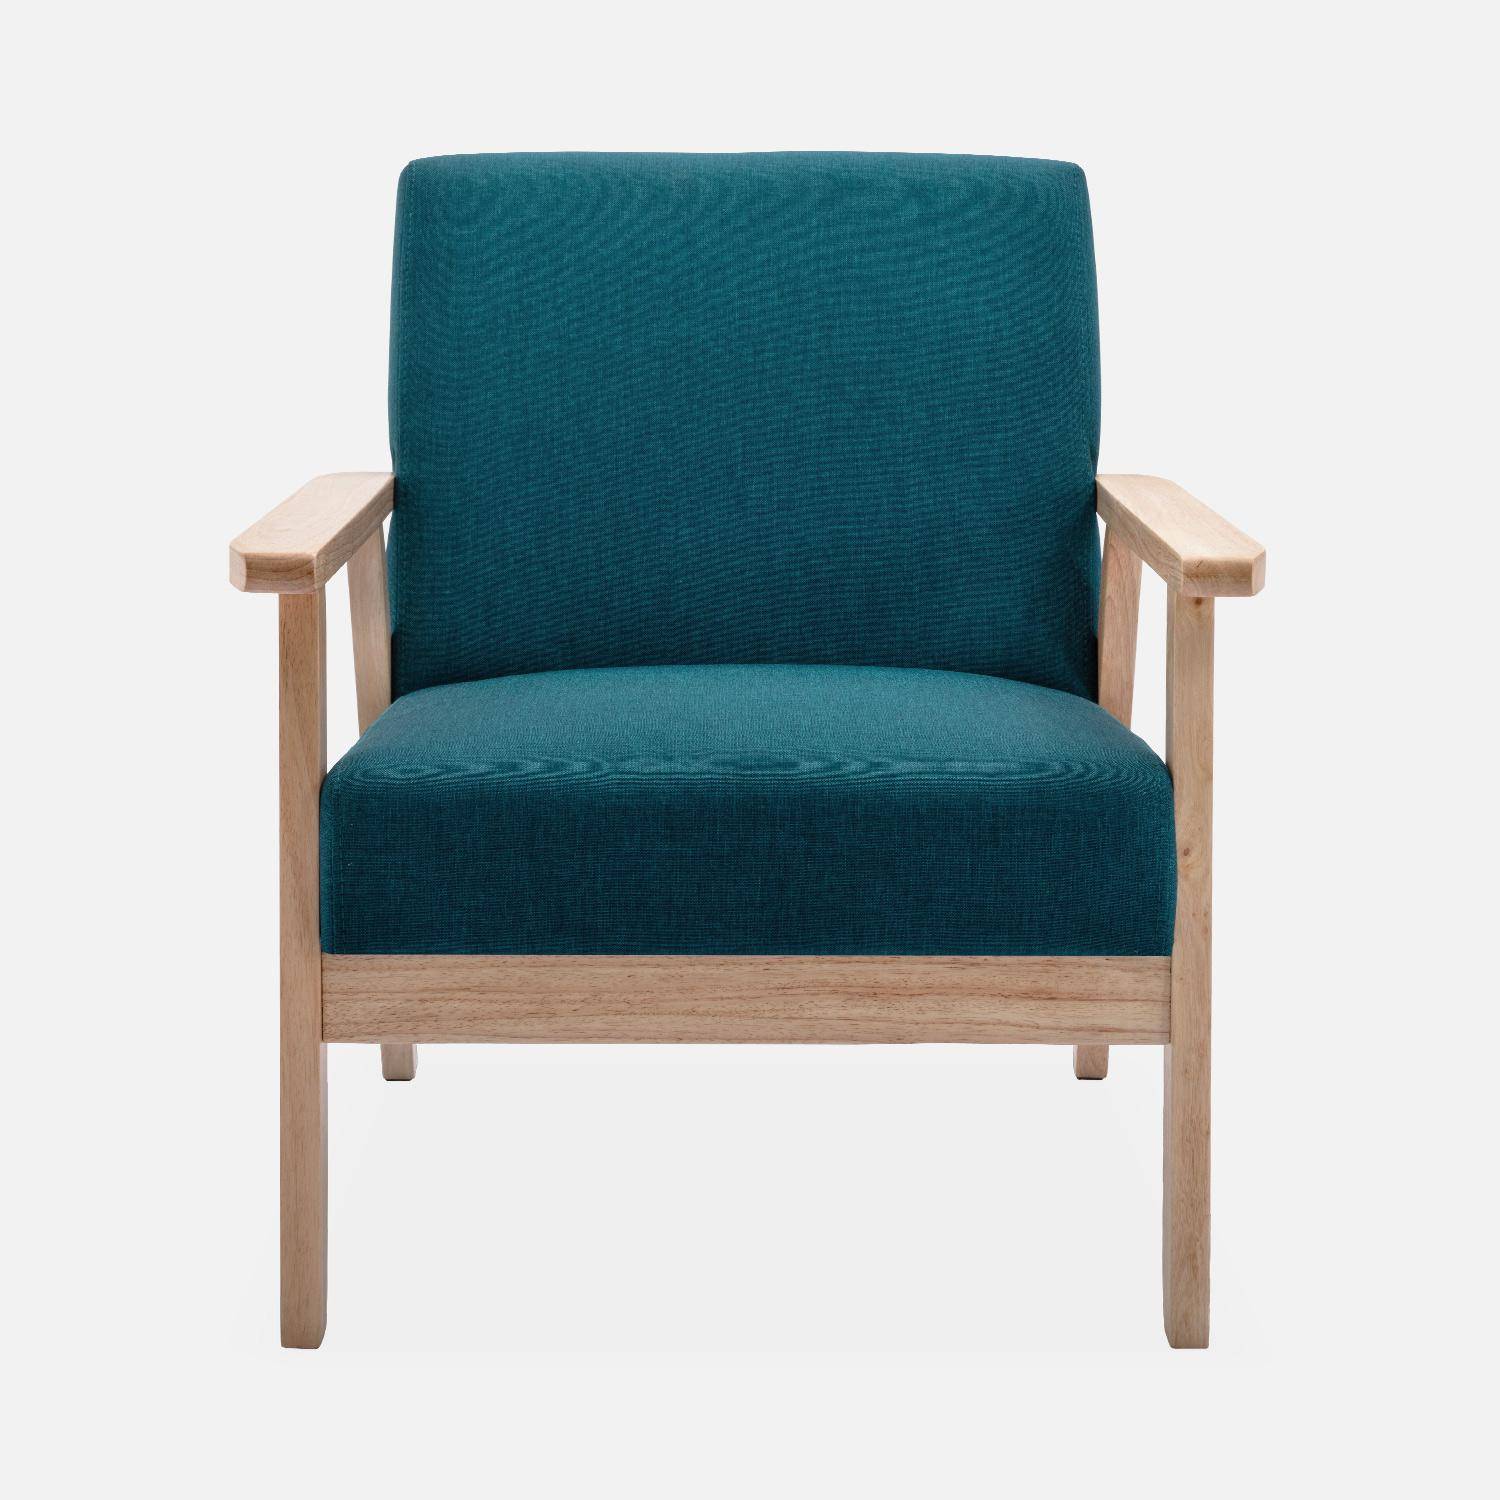 Banco y sillón escandinavos de madera y tela azul petróleo L 114 x A 69,5 x Alt 73cm Photo4